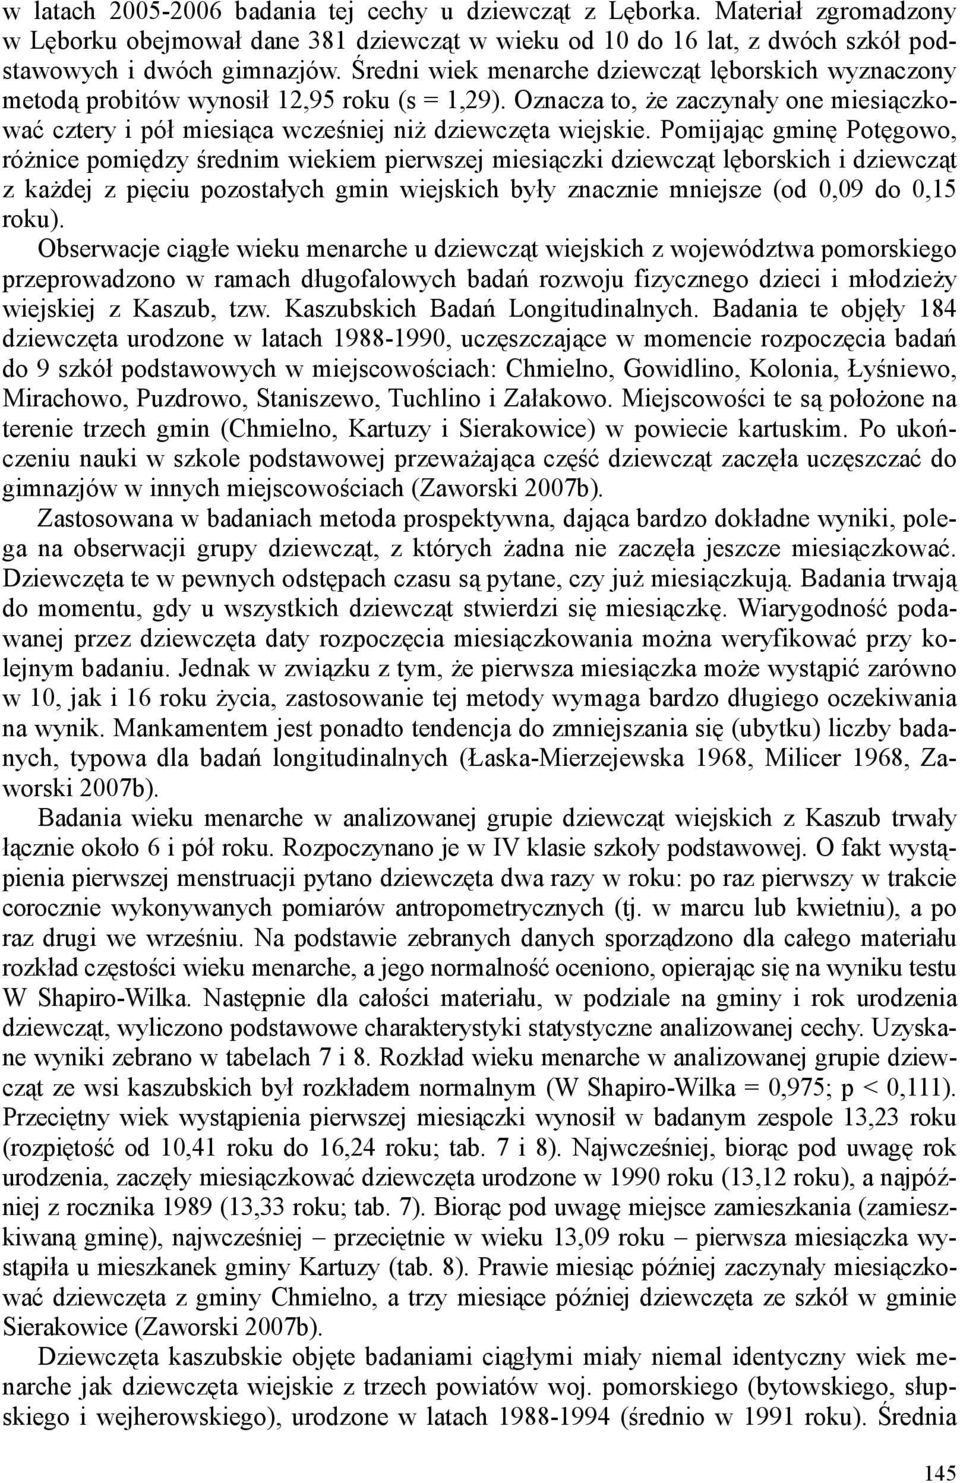 Pomijając gminę Potęgowo, róŝnice pomiędzy średnim wiekiem pierwszej miesiączki dziewcząt lęborskich i dziewcząt z kaŝdej z pięciu pozostałych gmin wiejskich były znacznie mniejsze (od 0,09 do 0,15